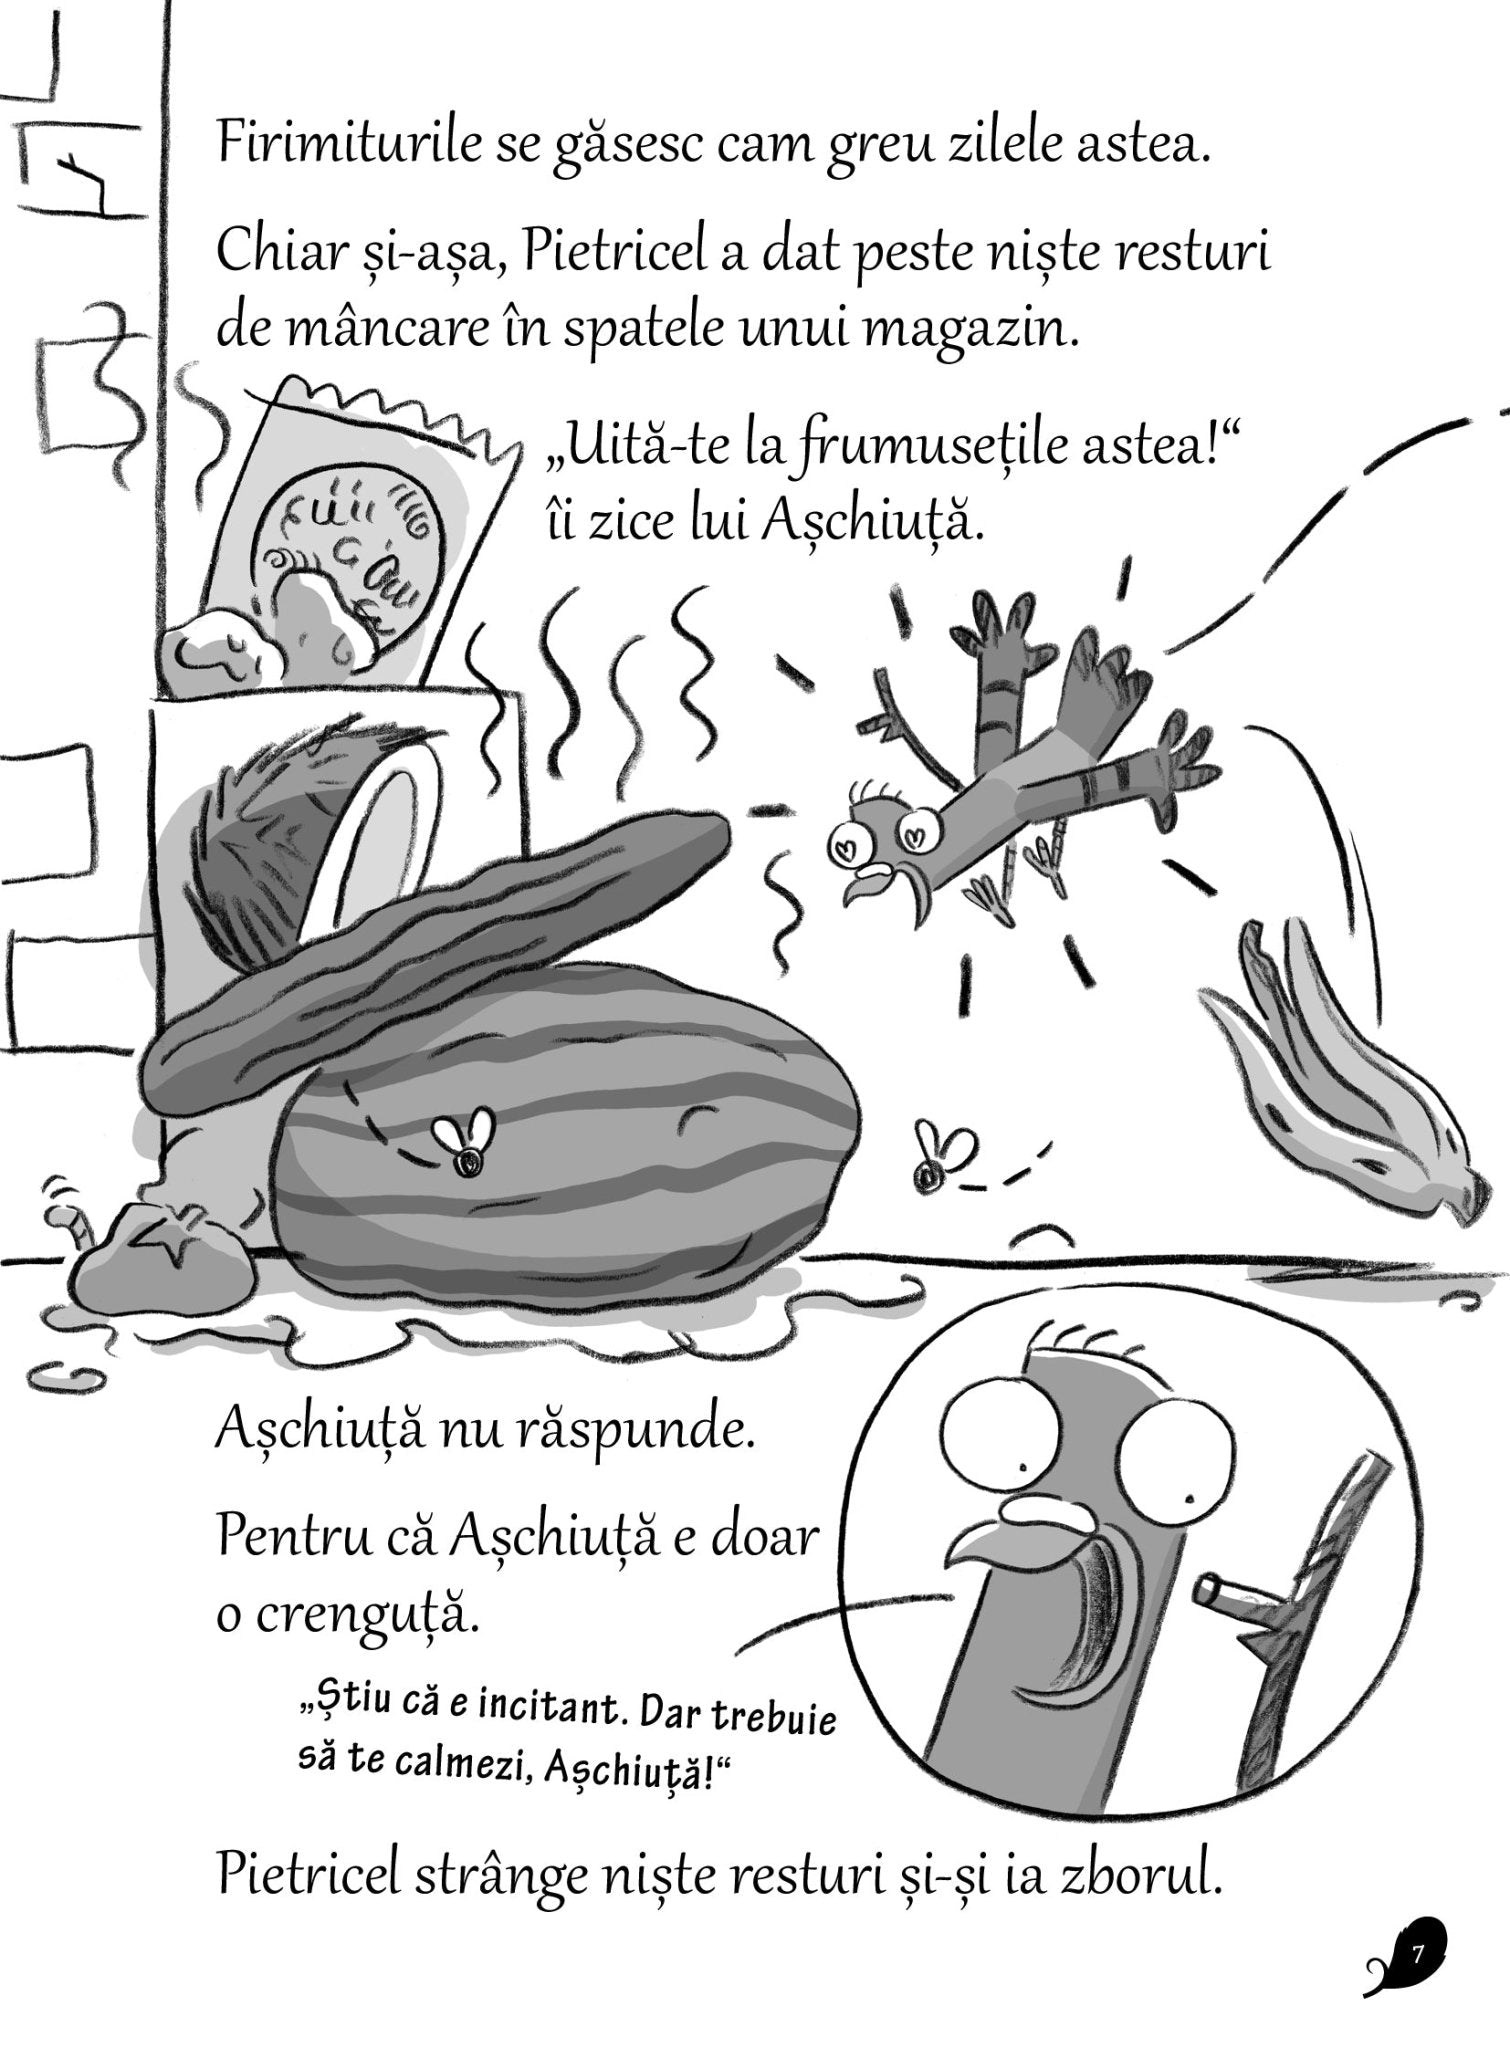 Adevaratii Porumbei intra in paine (vol.VI) - Publisol.ro